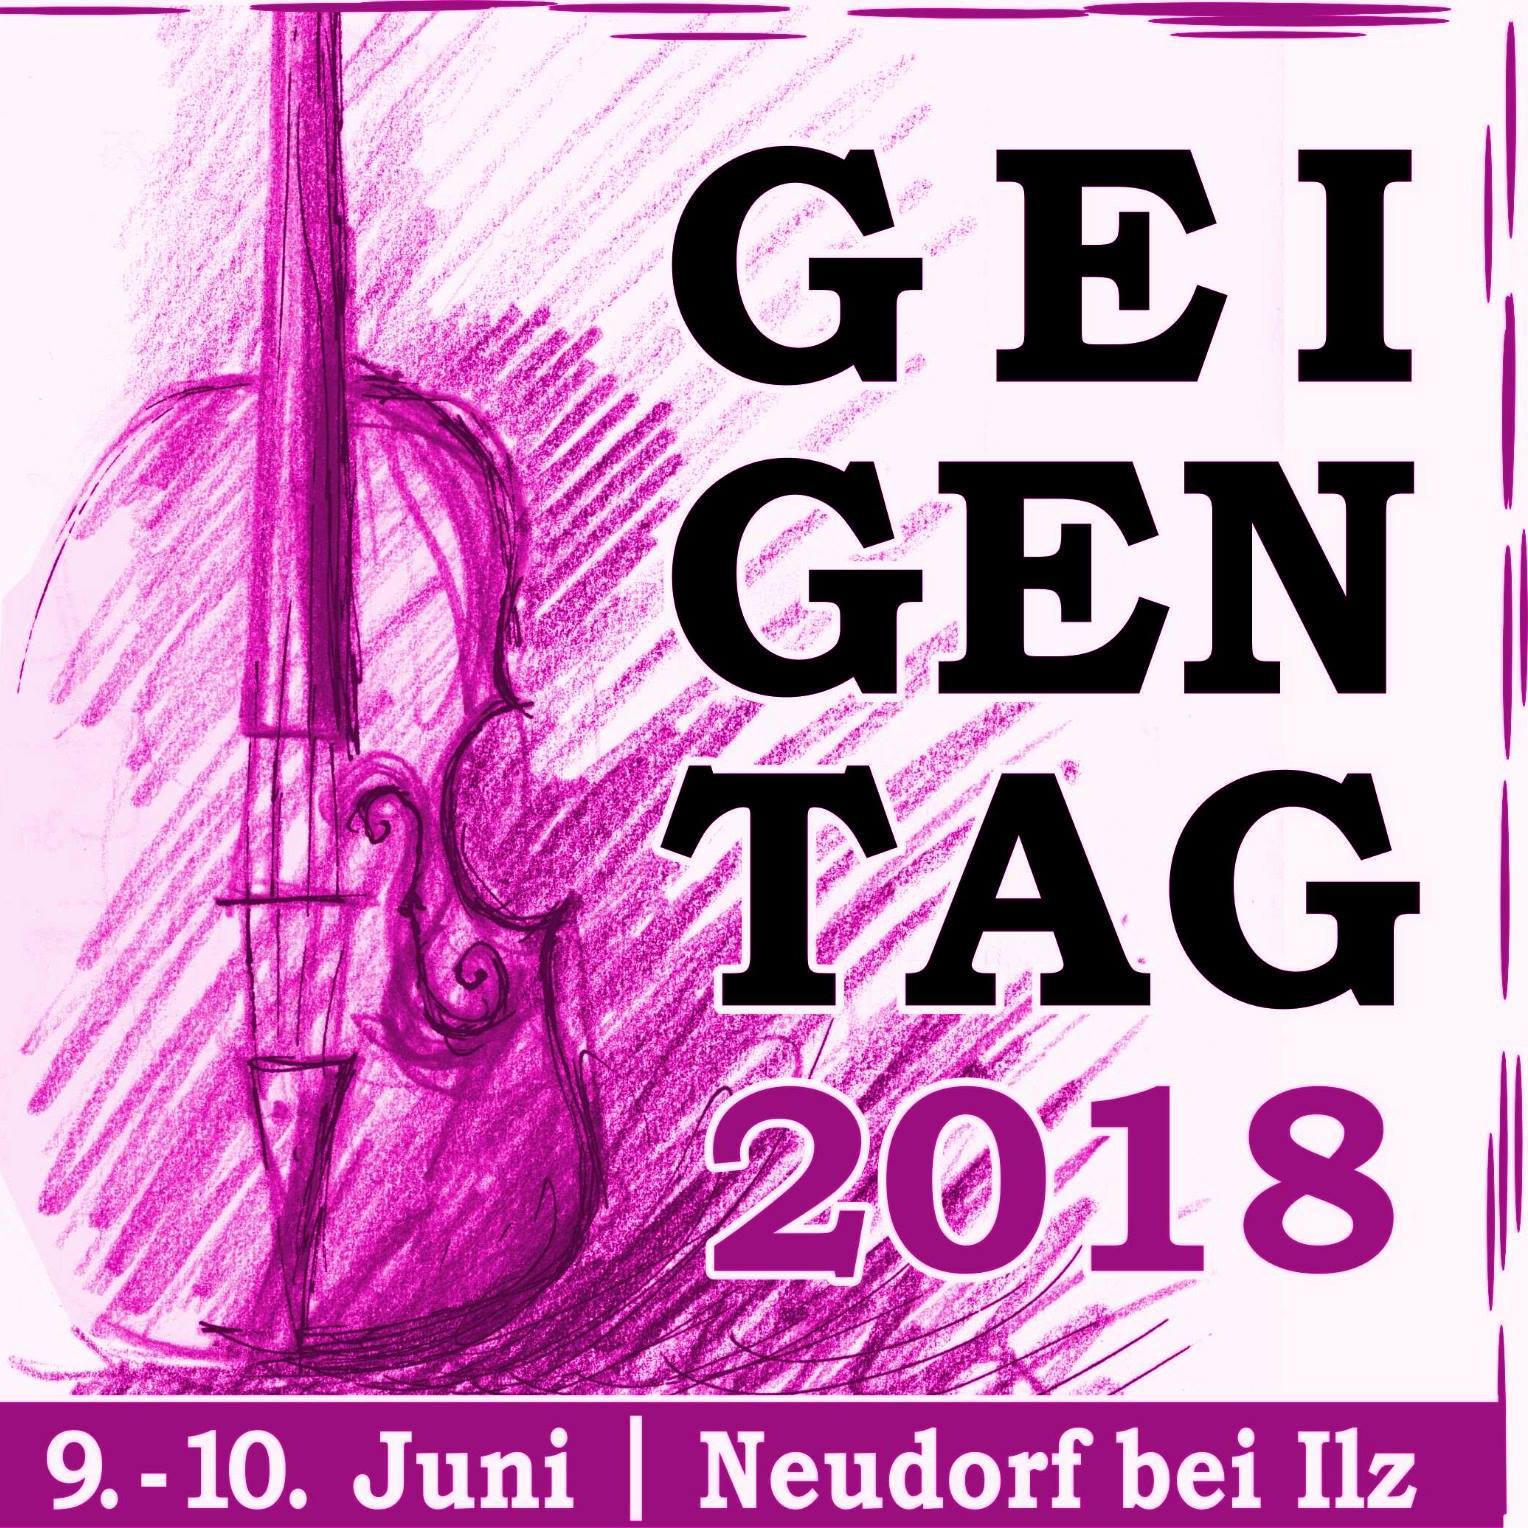 Geigentag Logo